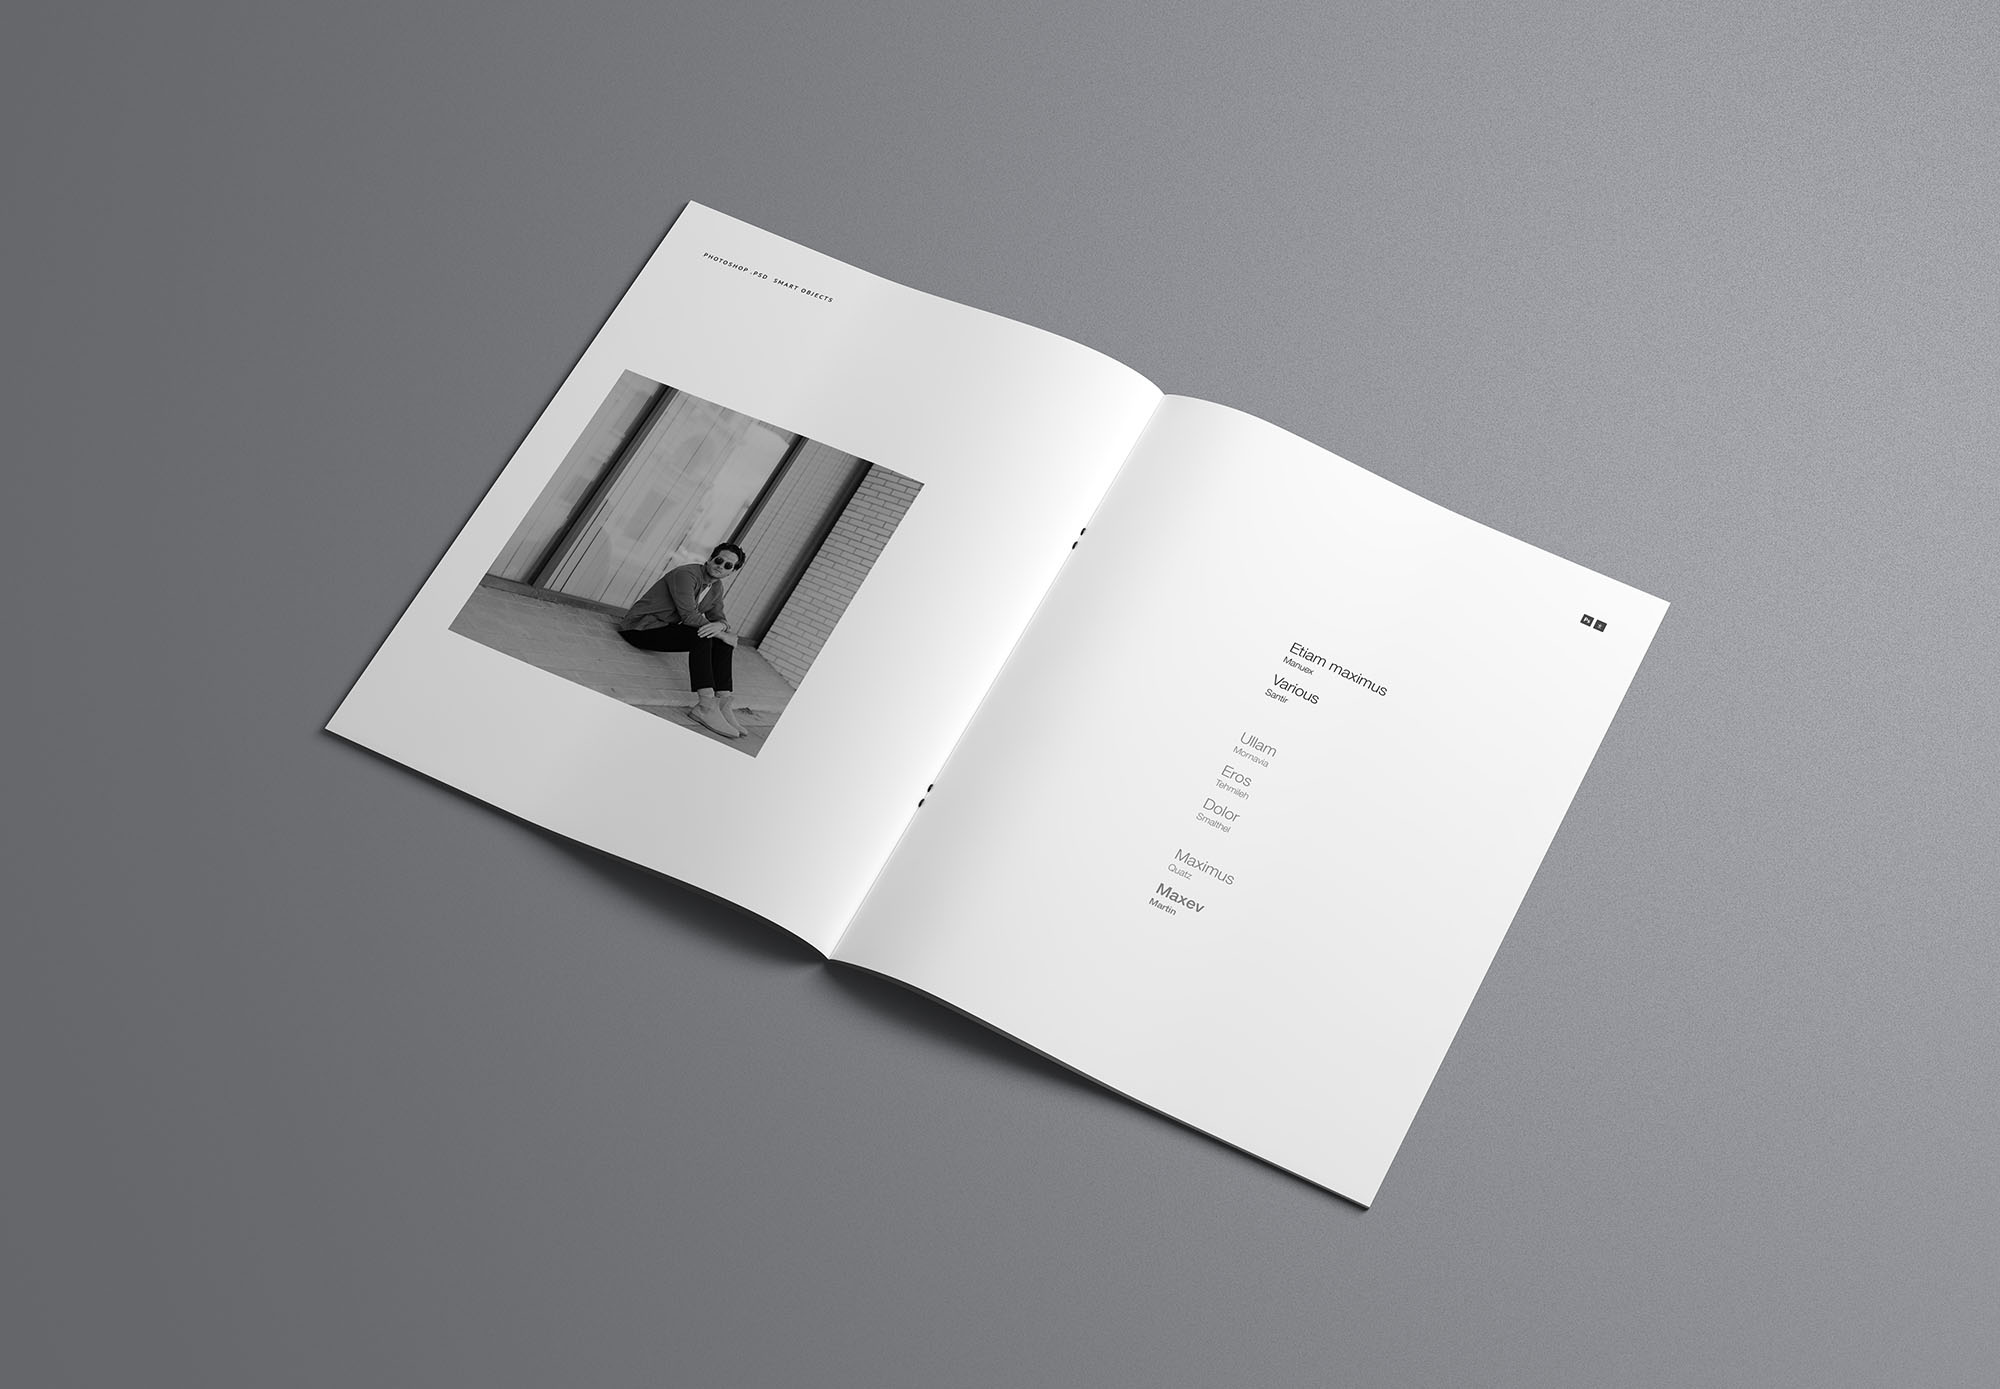 时尚简约优雅的专业画册杂志设计样机展示 Fashion Simple And Elegant Professional Album Magazine Design Prototype Show[2.16G]插图3